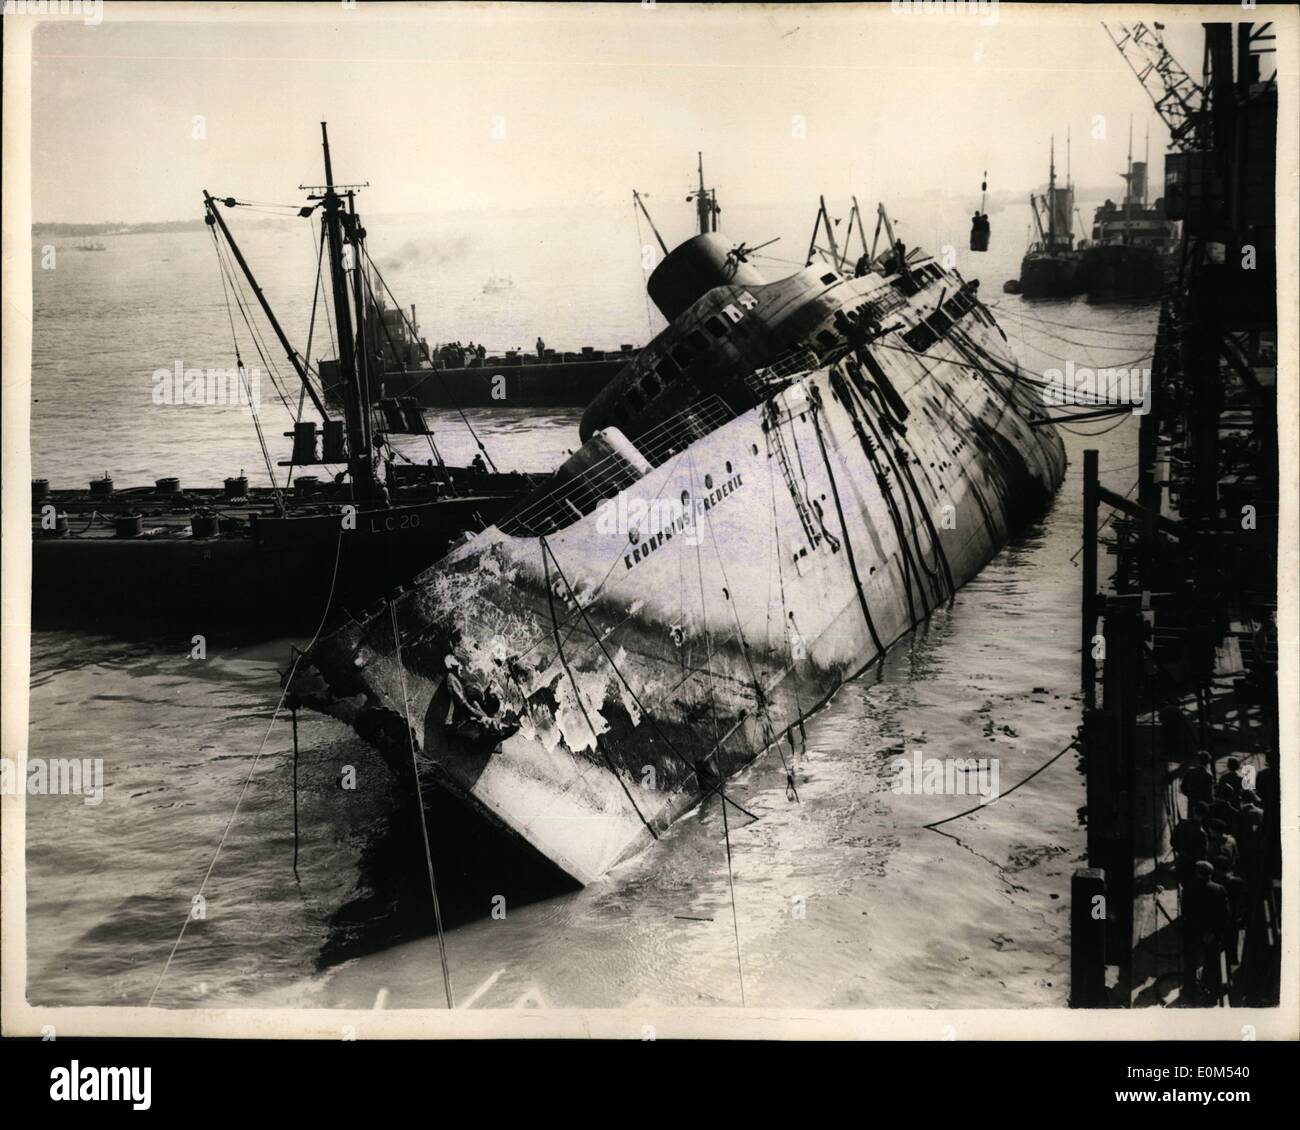 Agosto 08, 1953 - Il sollevamento del ''Kronprins Frederik''. Gli sforzi per elevare il sunken liner danese, ''Kronprins Frederik'', che si rovesciò ed affondò dopo essere stata spazzata via dai fuoco a Harwich, in aprile, vengono fatte oggi. Recuperare gli uomini hanno lavorato per mesi sulla nave e sono iniziati i lavori per il suo sollevamento. Keystone Mostra fotografica di:- iniziarono i lavori per preparare il sollevatore a 6.30 di questa mattina e questa è stata la scena a ore 10- che mostra due uomini di essere sollevato dalla nave in una benna, mediante gru. Foto Stock